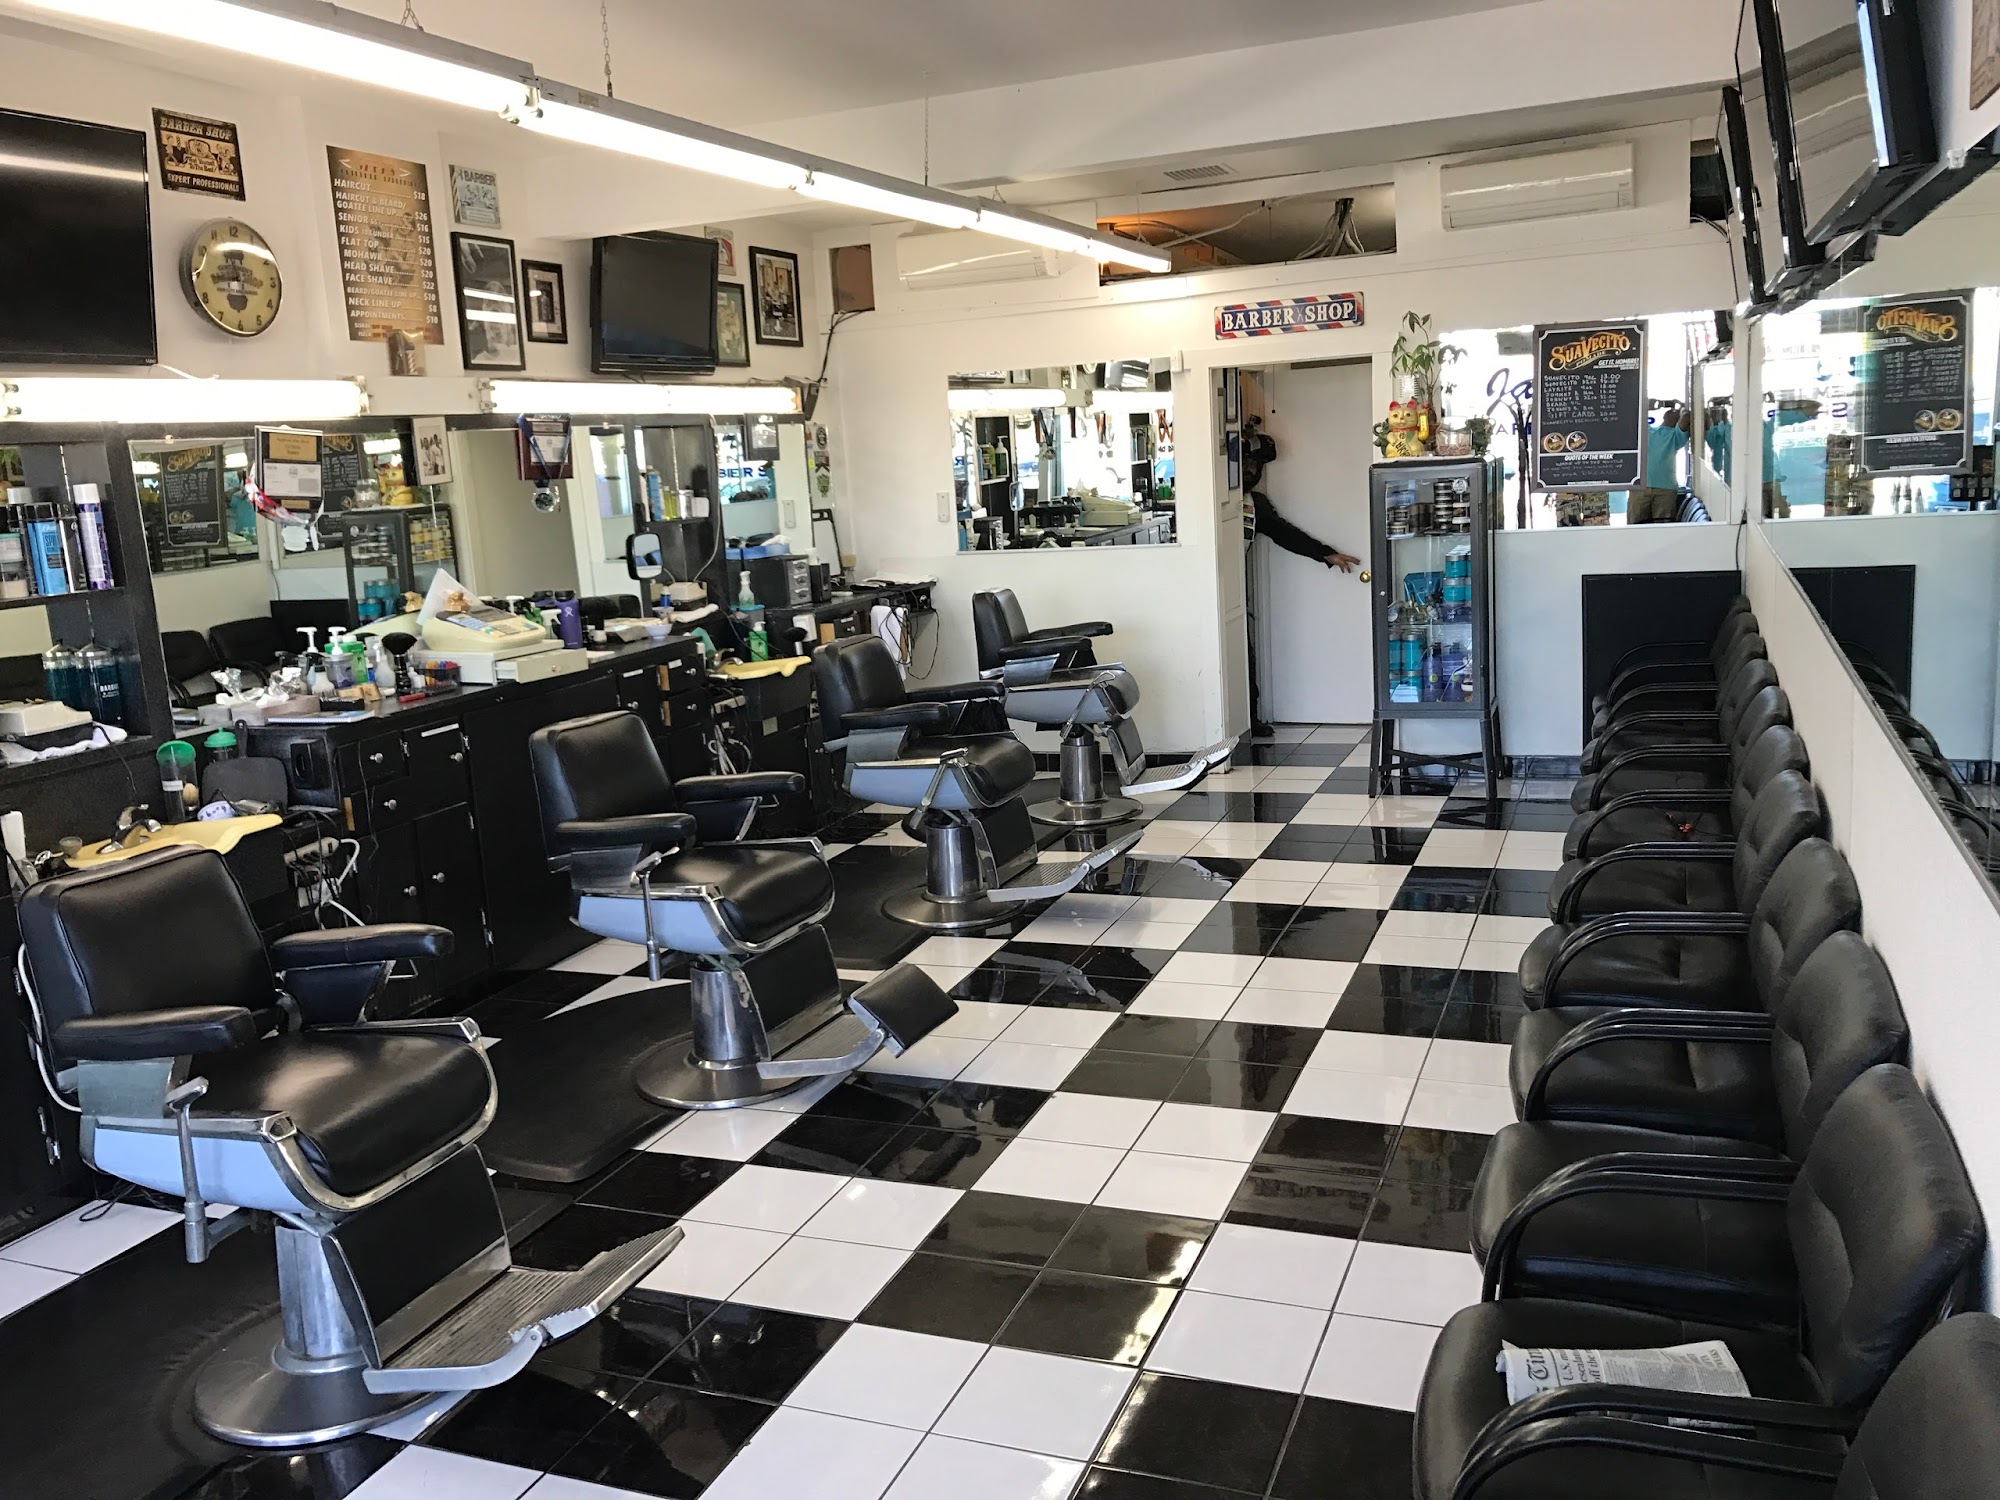 Jara's Gentlemen Barber Shop